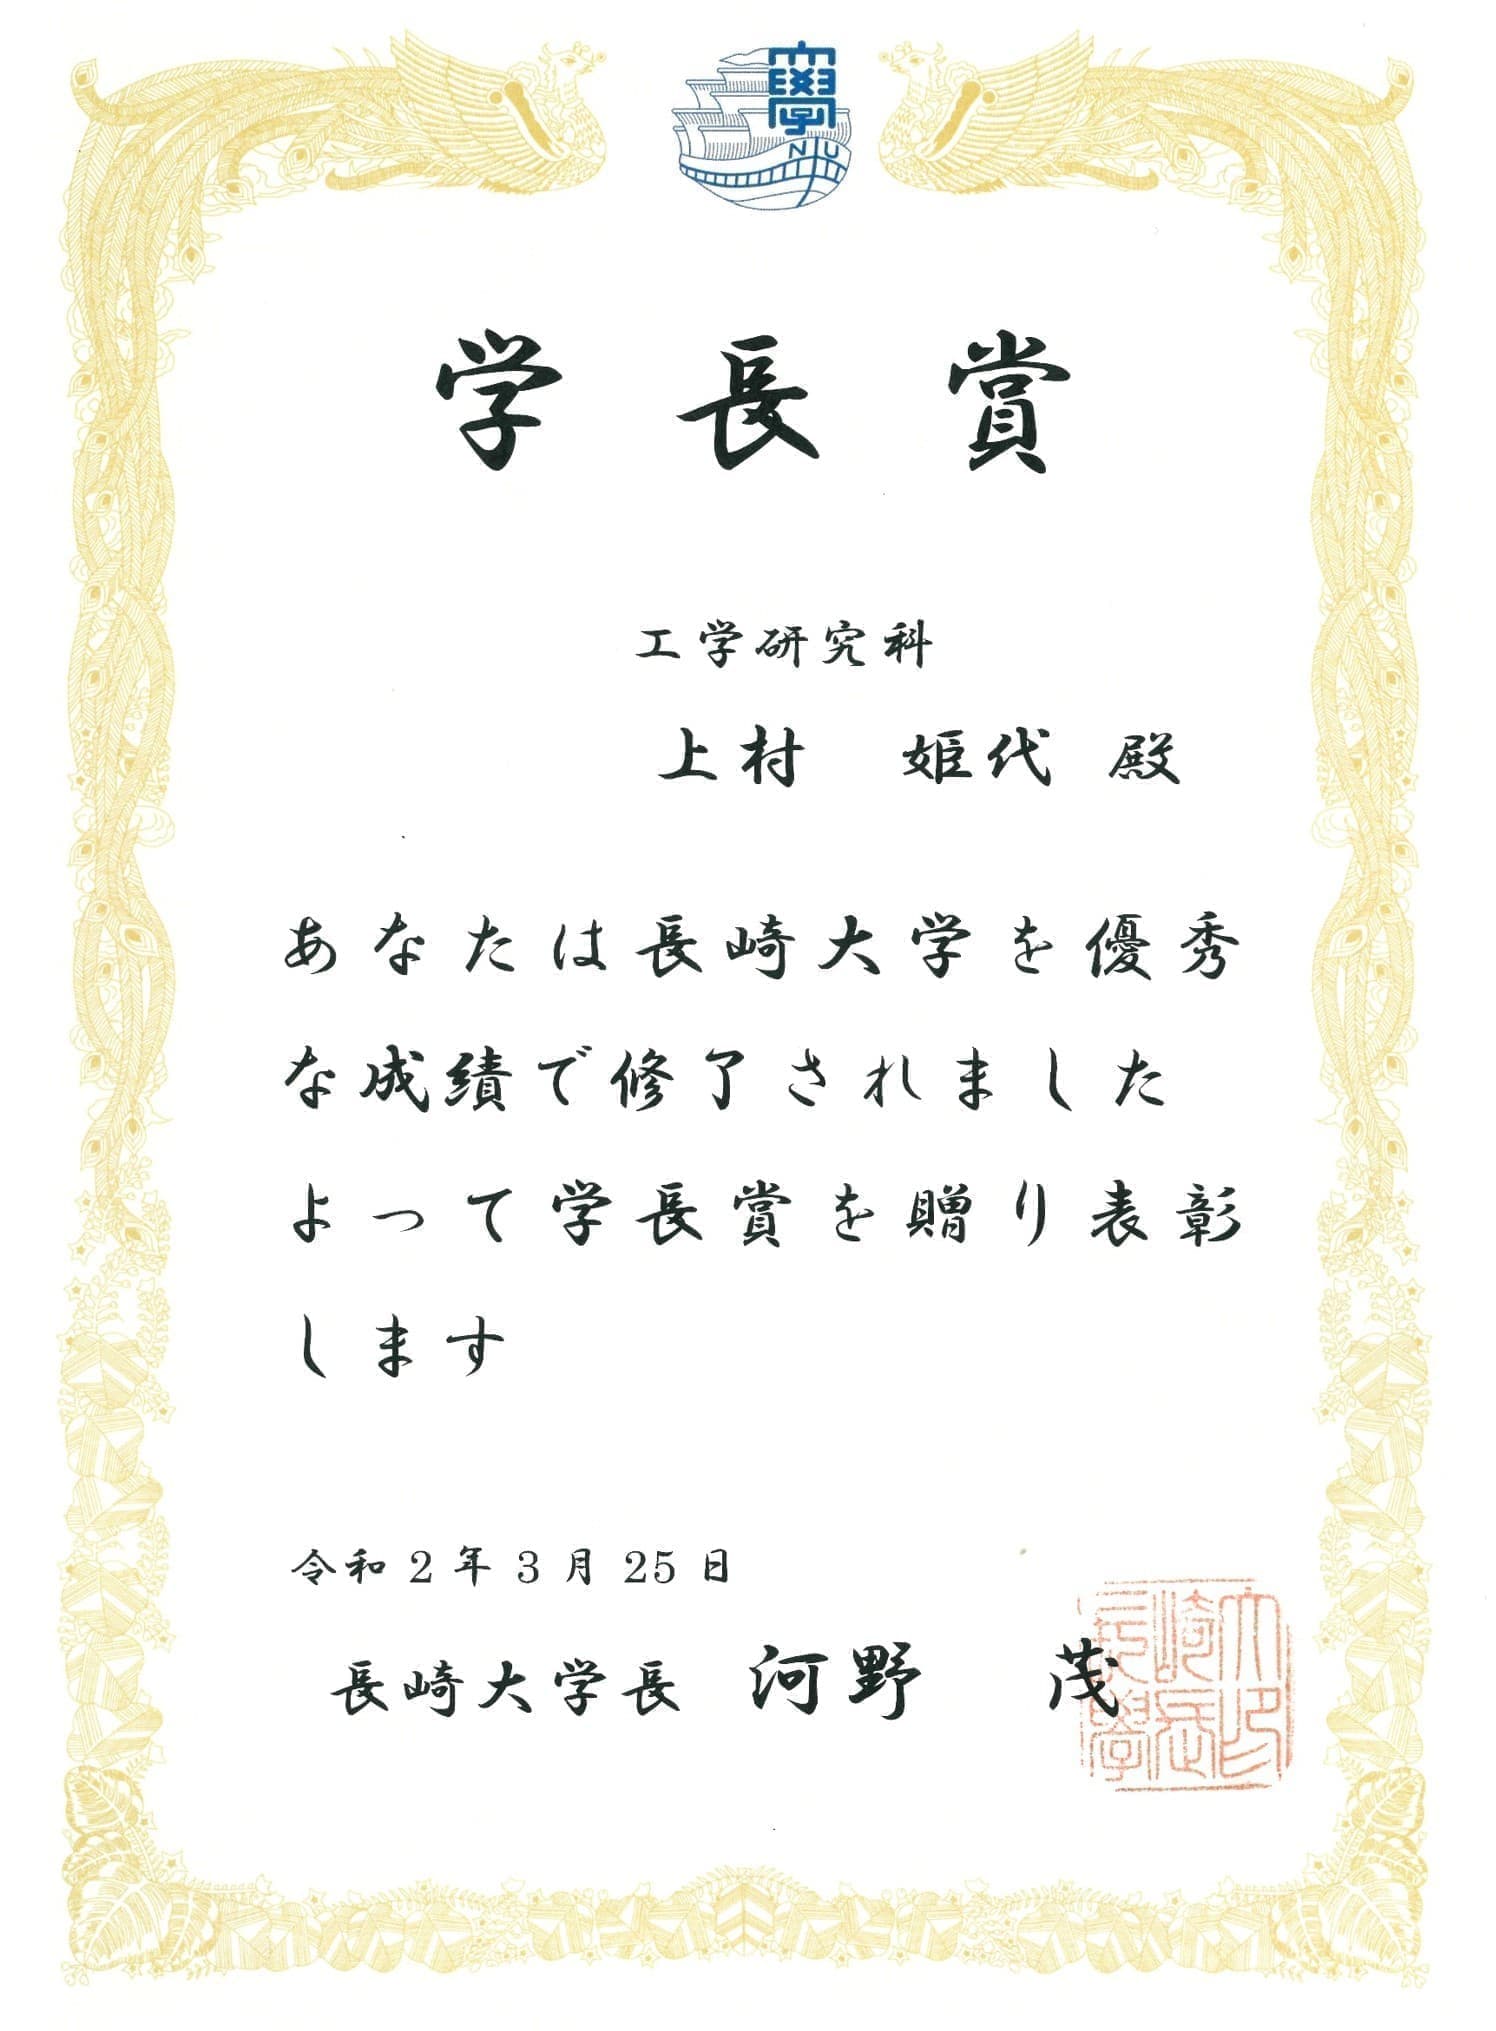 上村姫代さん(M2)が、工学研究科・総代として、長崎大学卒業証書・学位記授与式に出席しました。また、学長賞（学業分野）を受賞しました。2020/03/25